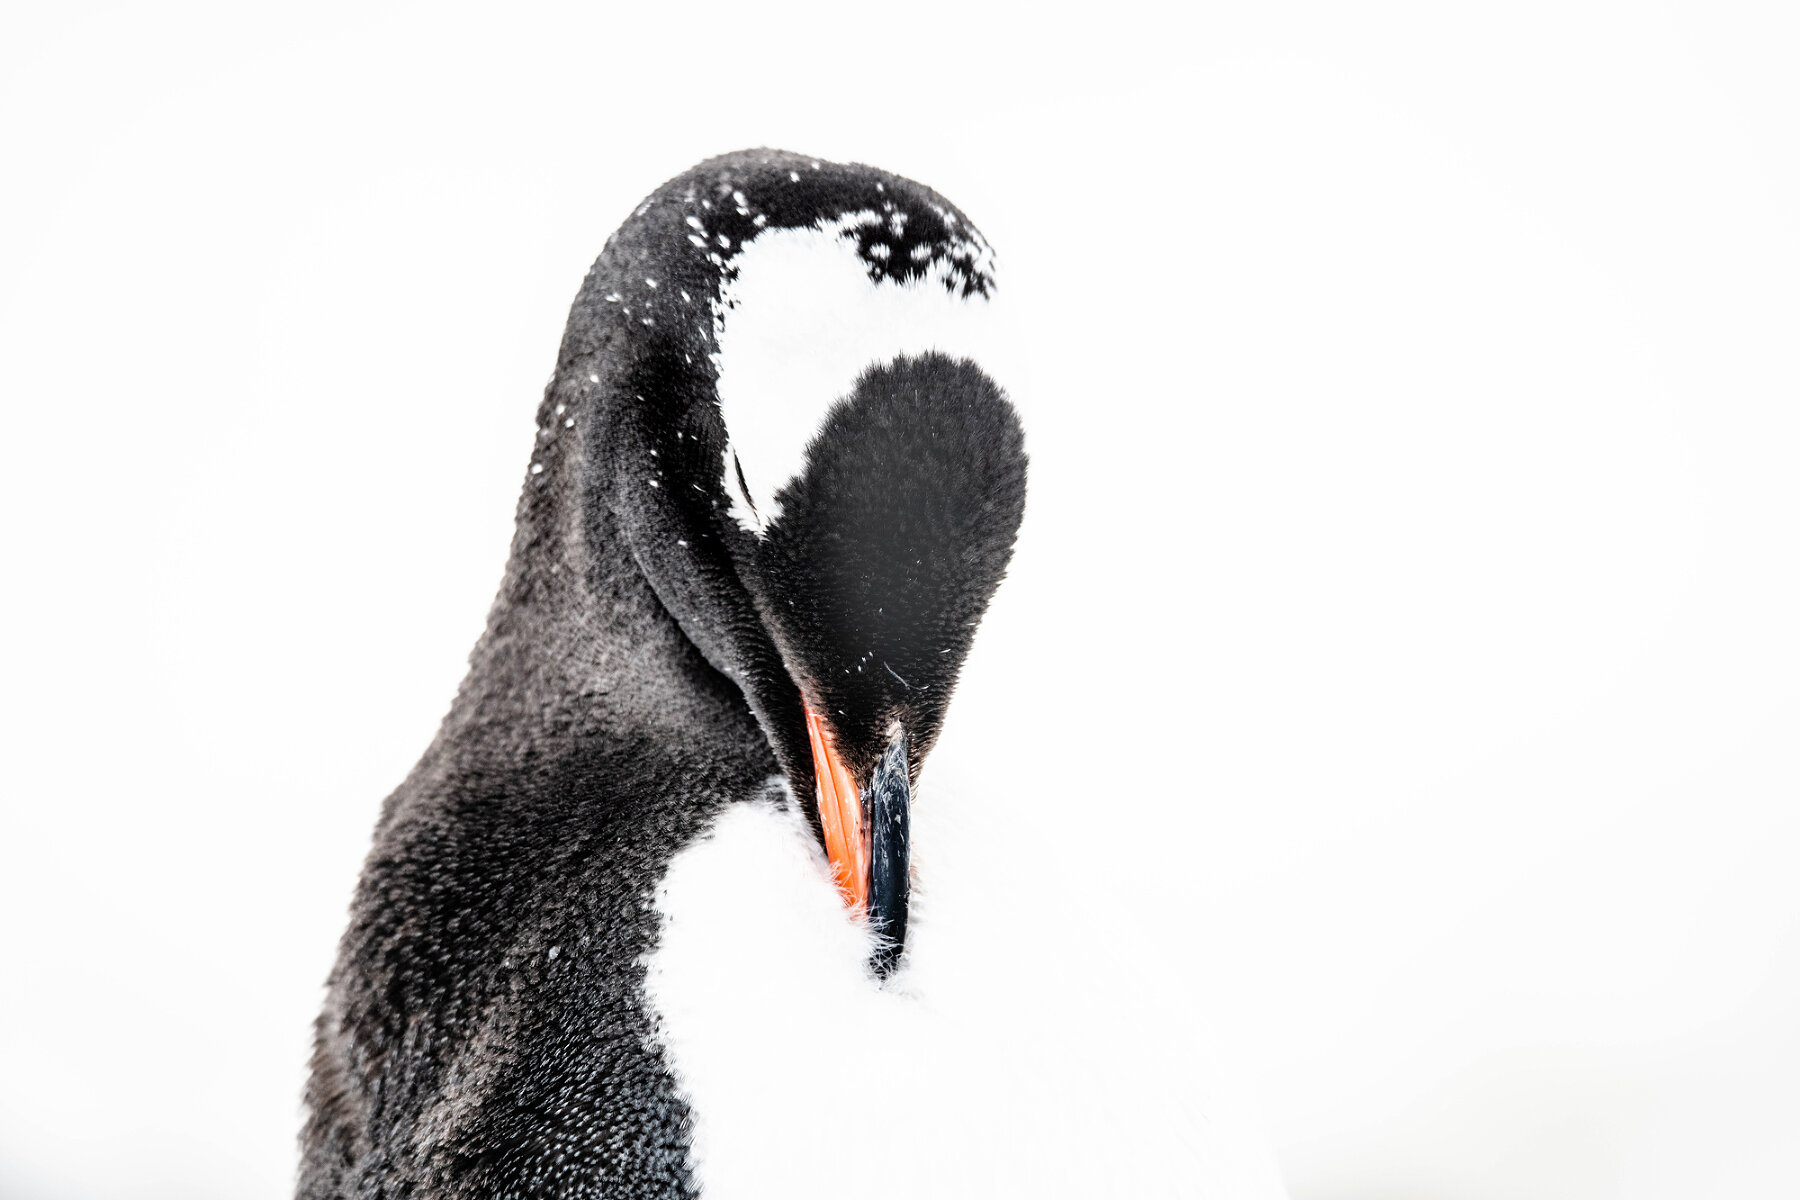 <p>Пингвины совершенно не боятся людей, и снимать их можно часами. Порой удачливому фотографу удается снять удивительные кадры</p>